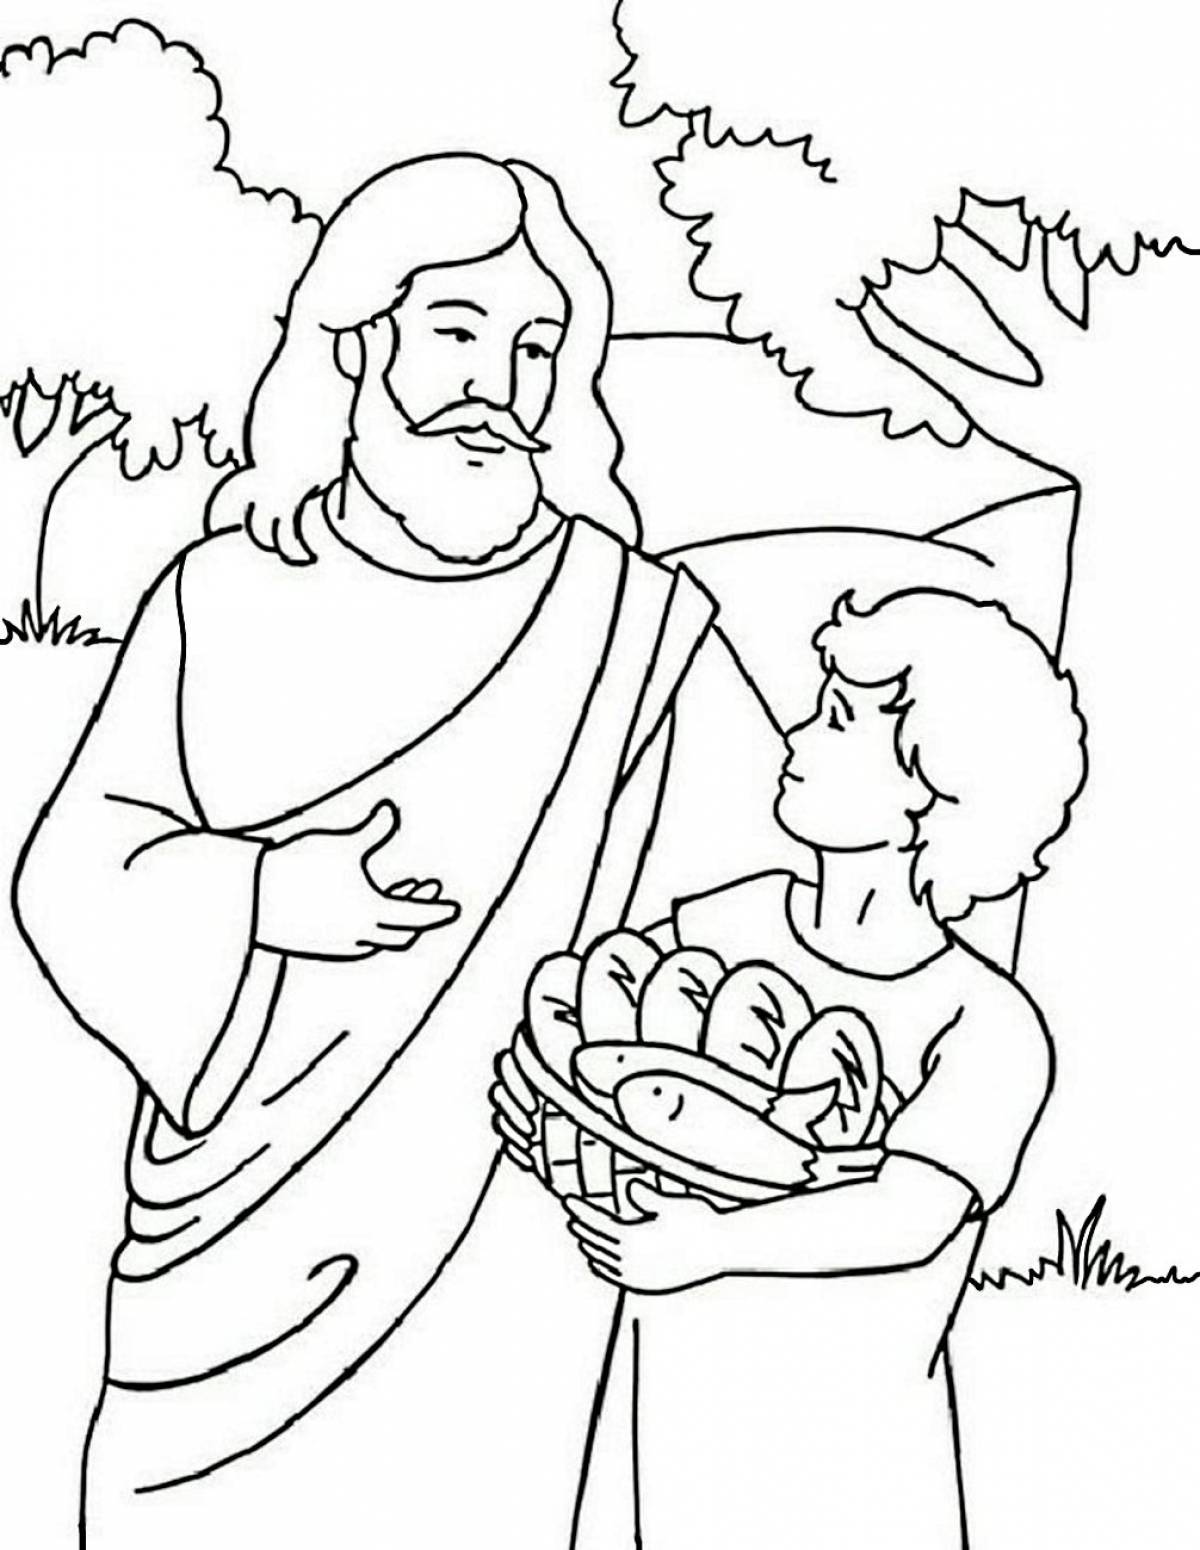 Детские раскраски по библейским сюжетам. 40 шт.